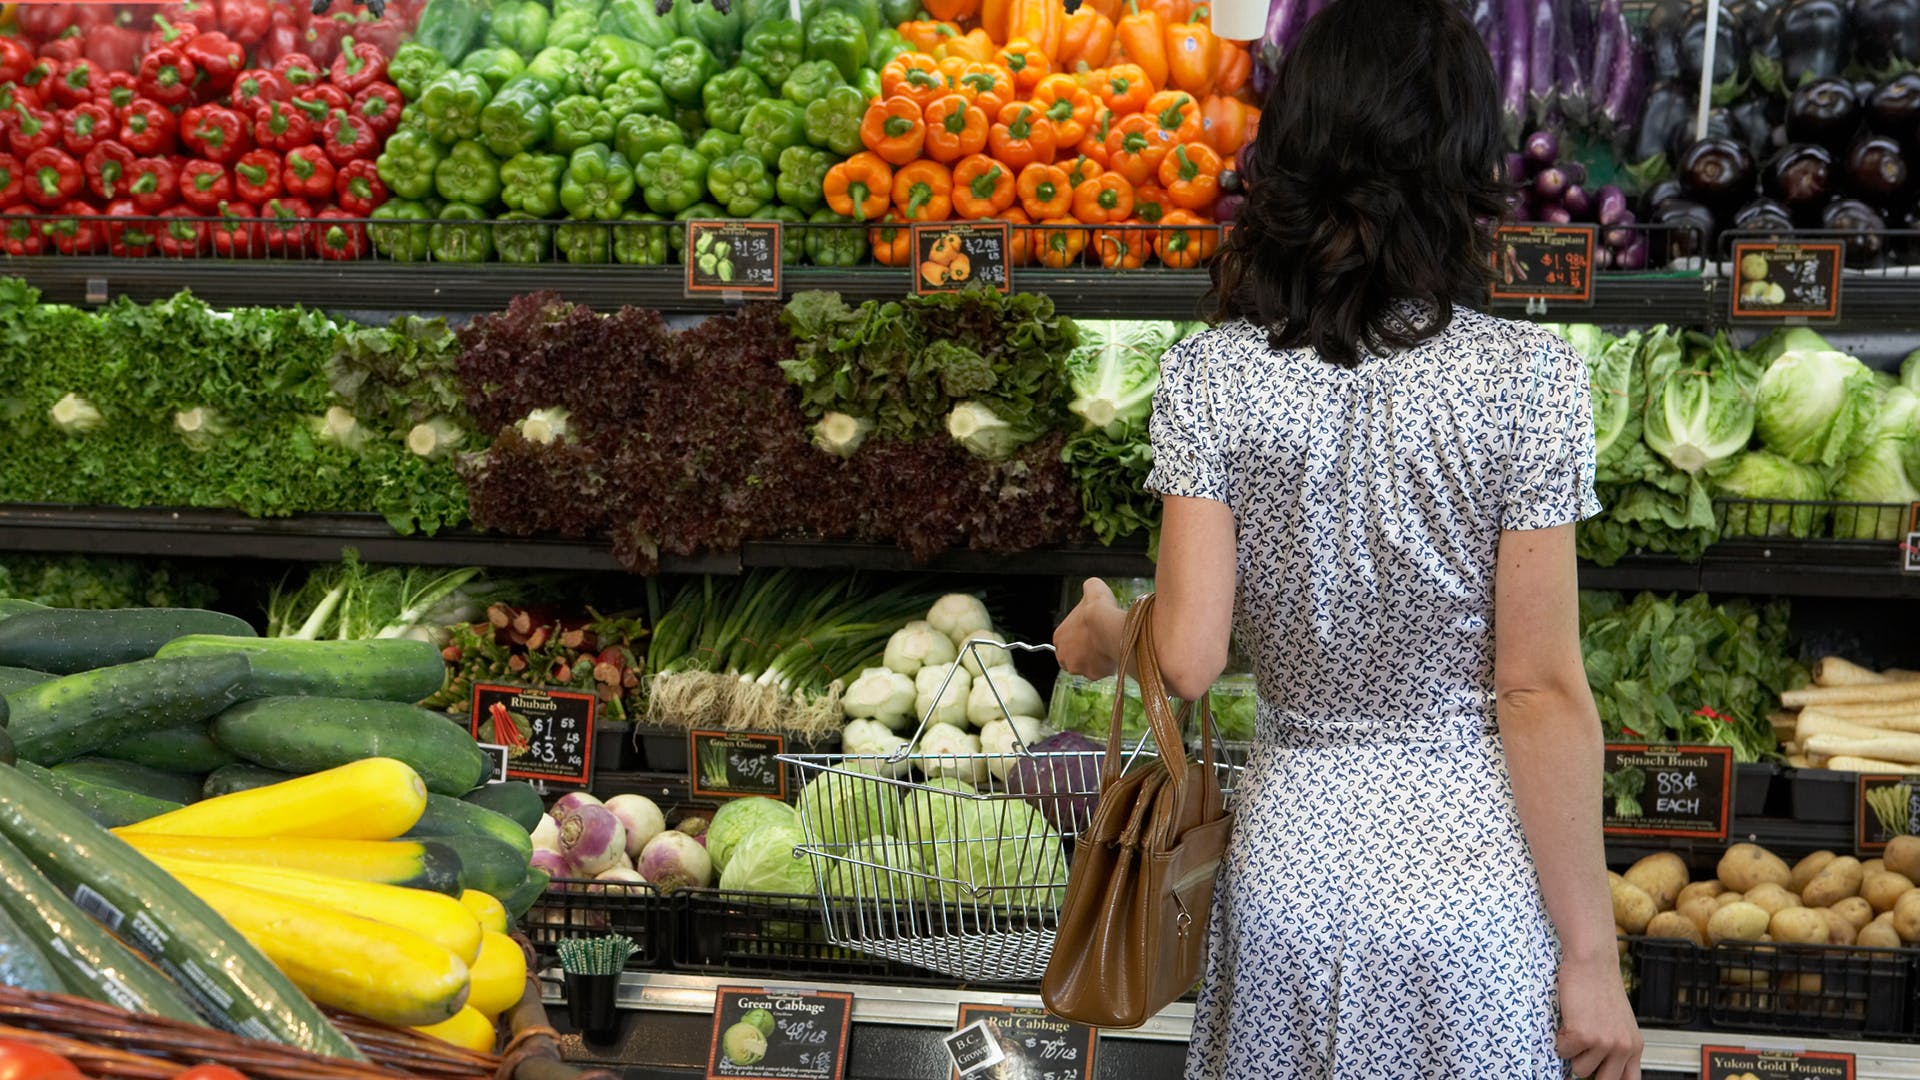 Недостаток овощей и фруктов в диете - хуже пестицидов